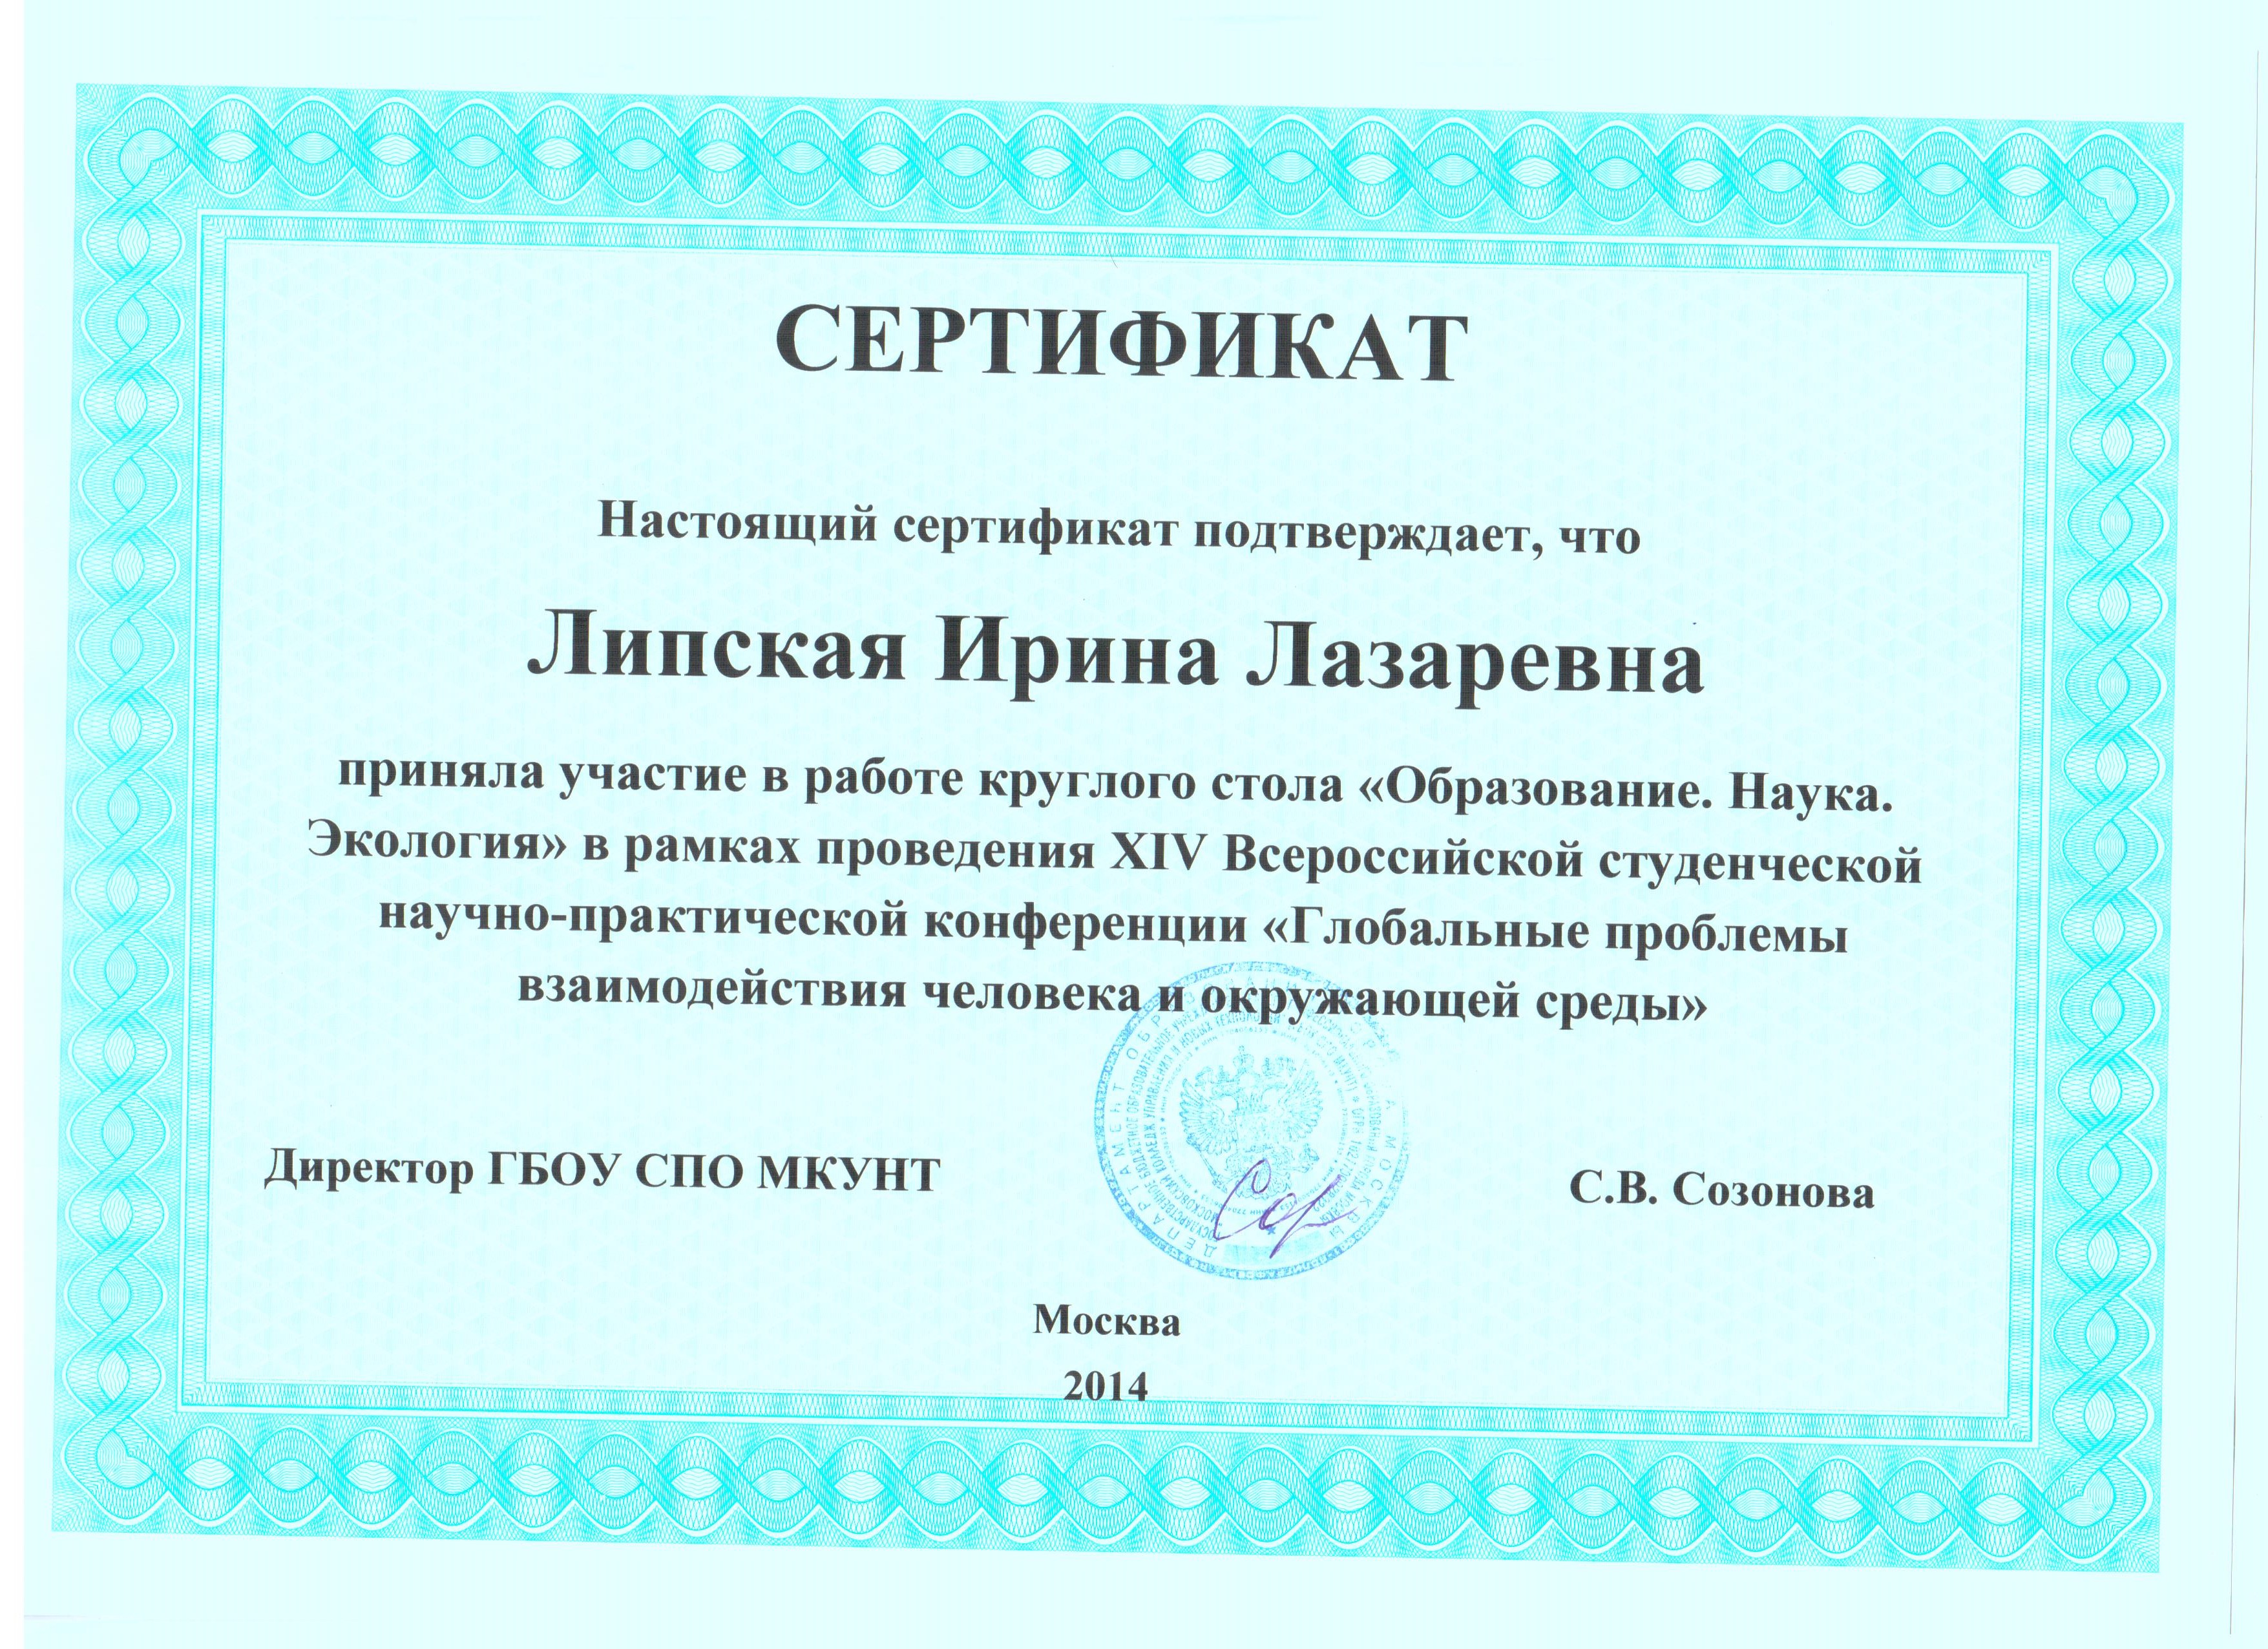 Сертификат об участии в круглом столе